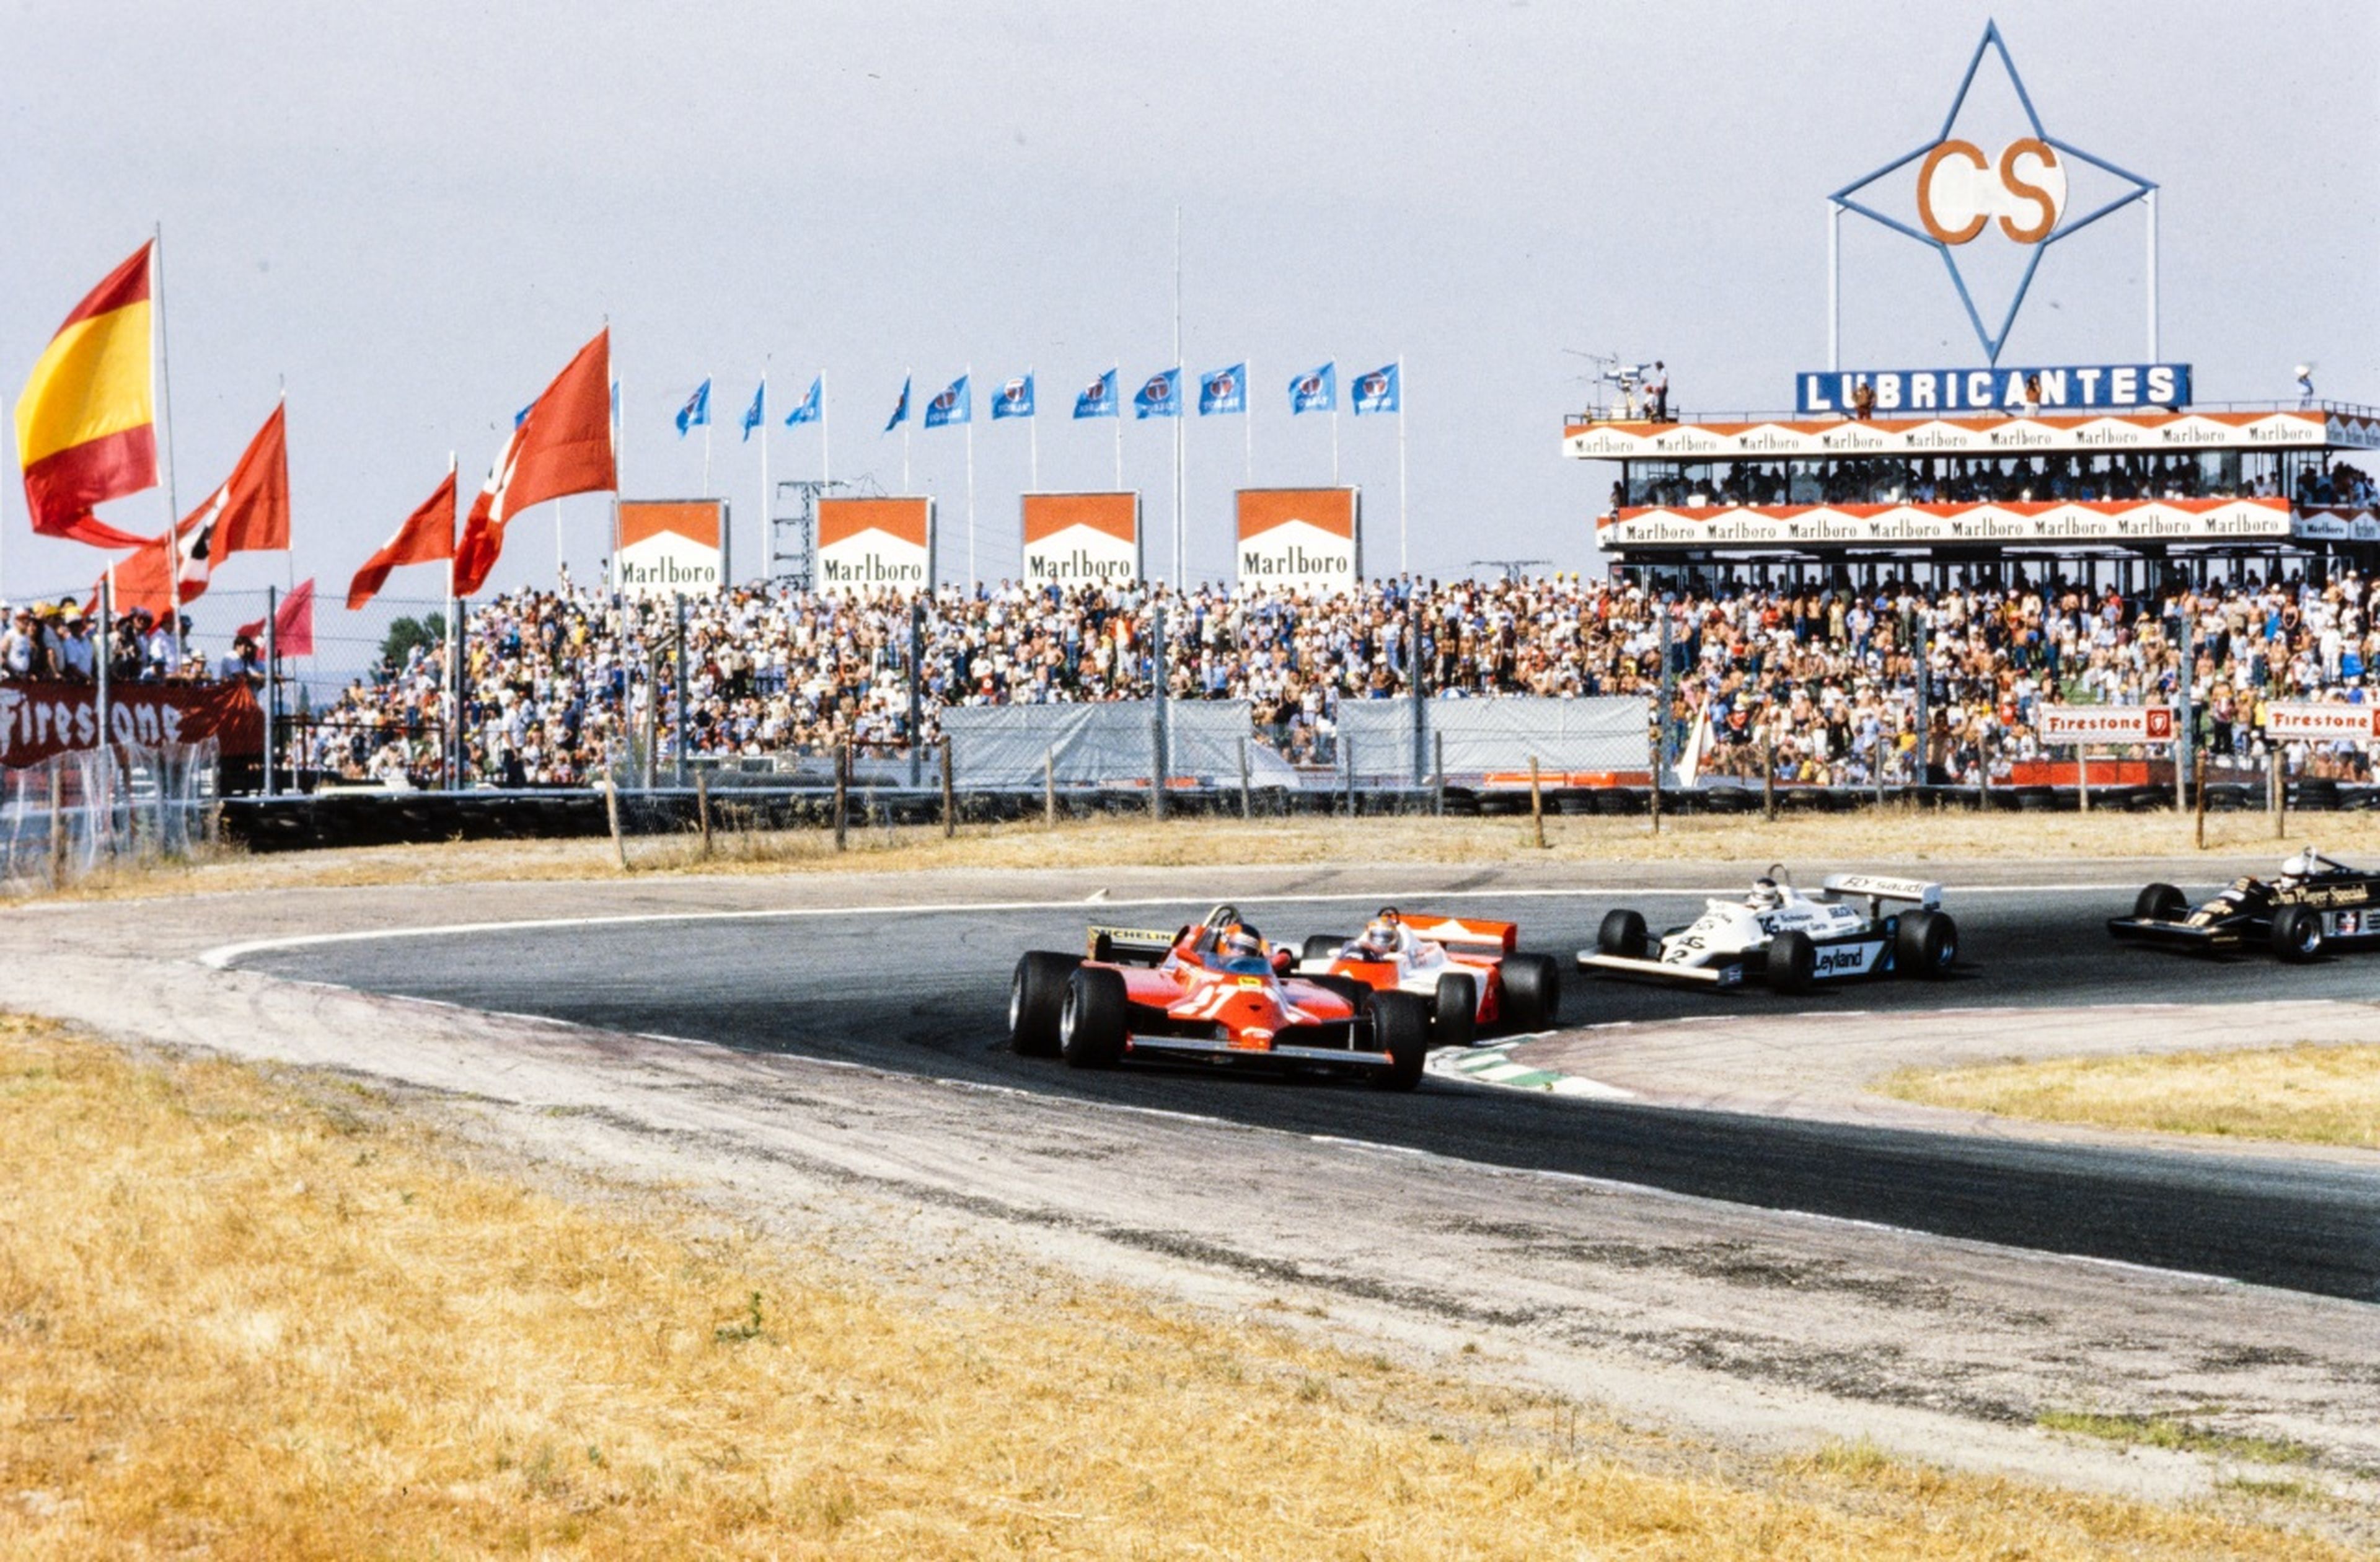 Gilles Villeneuve va directo con su Ferrari hacia la victoria en el último GP de Fórmula 1 celebrado en Madrid, en 1981. Foto: Motorsport Images.